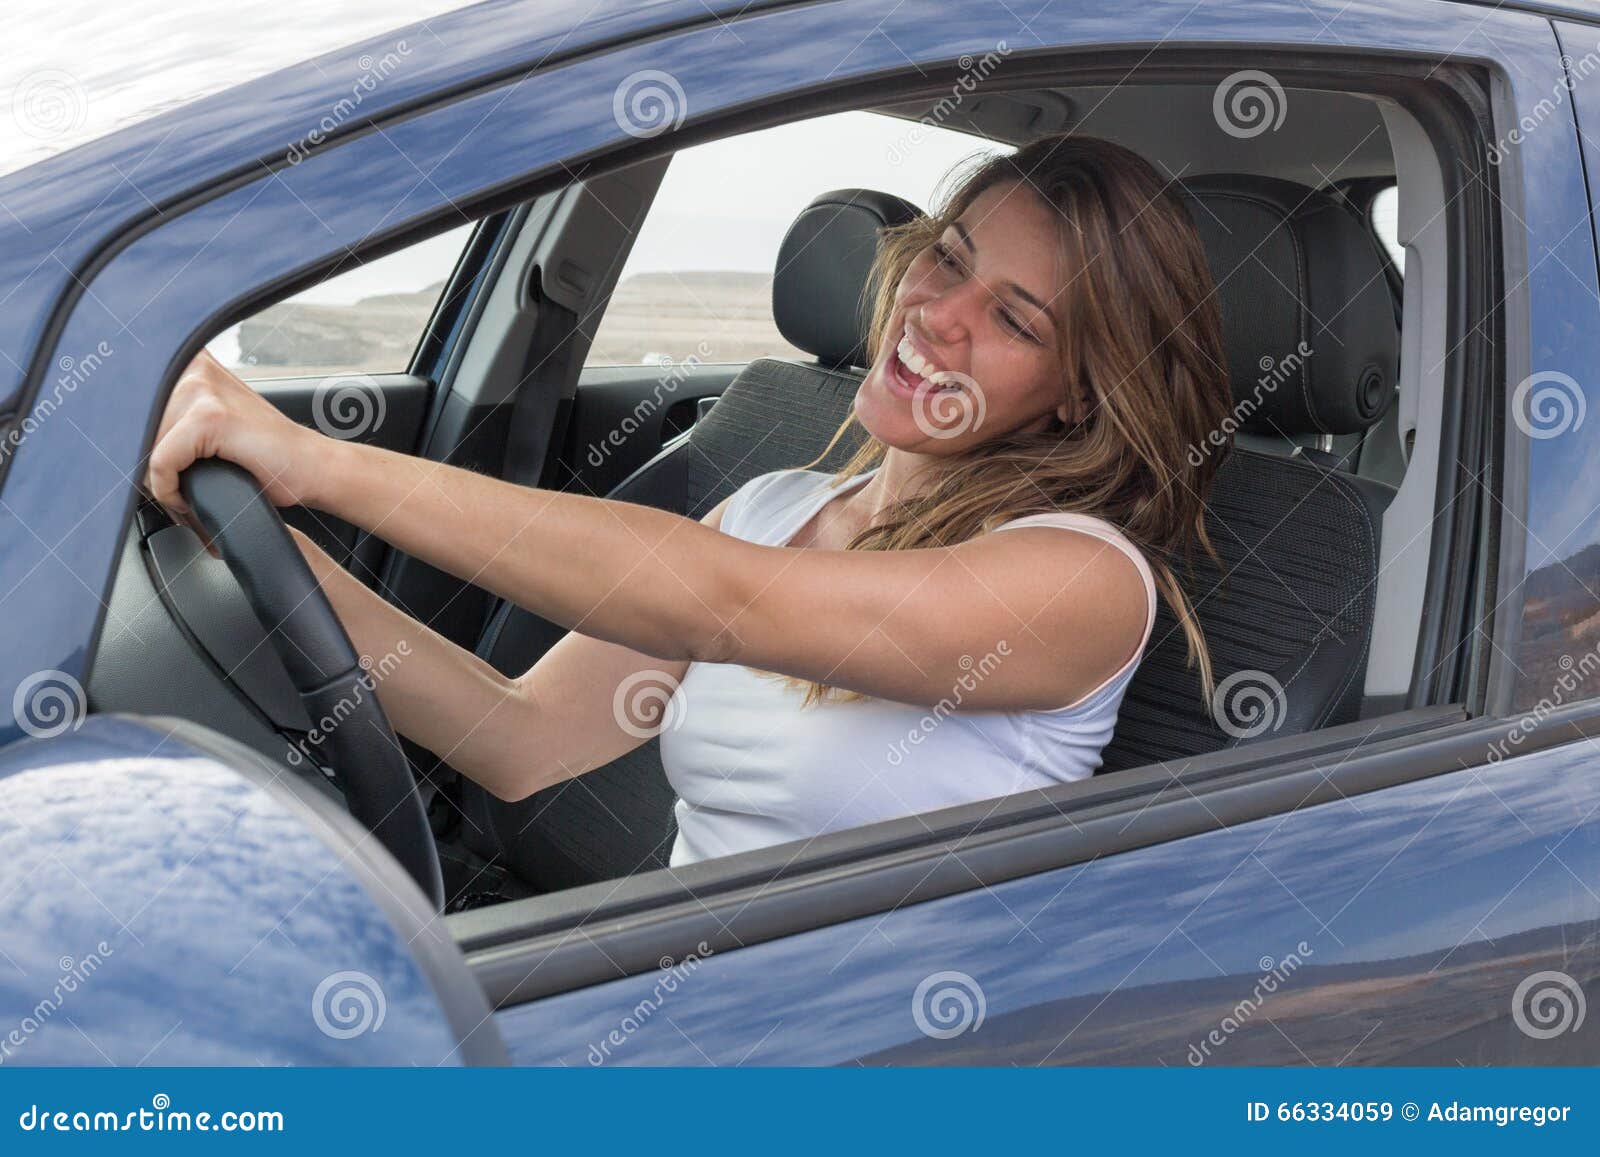 Девушка поет в машине песню. Девушка поет в машине. Девушка поет за рулем. Поющая девушка в автомобиле. Пение в машине.